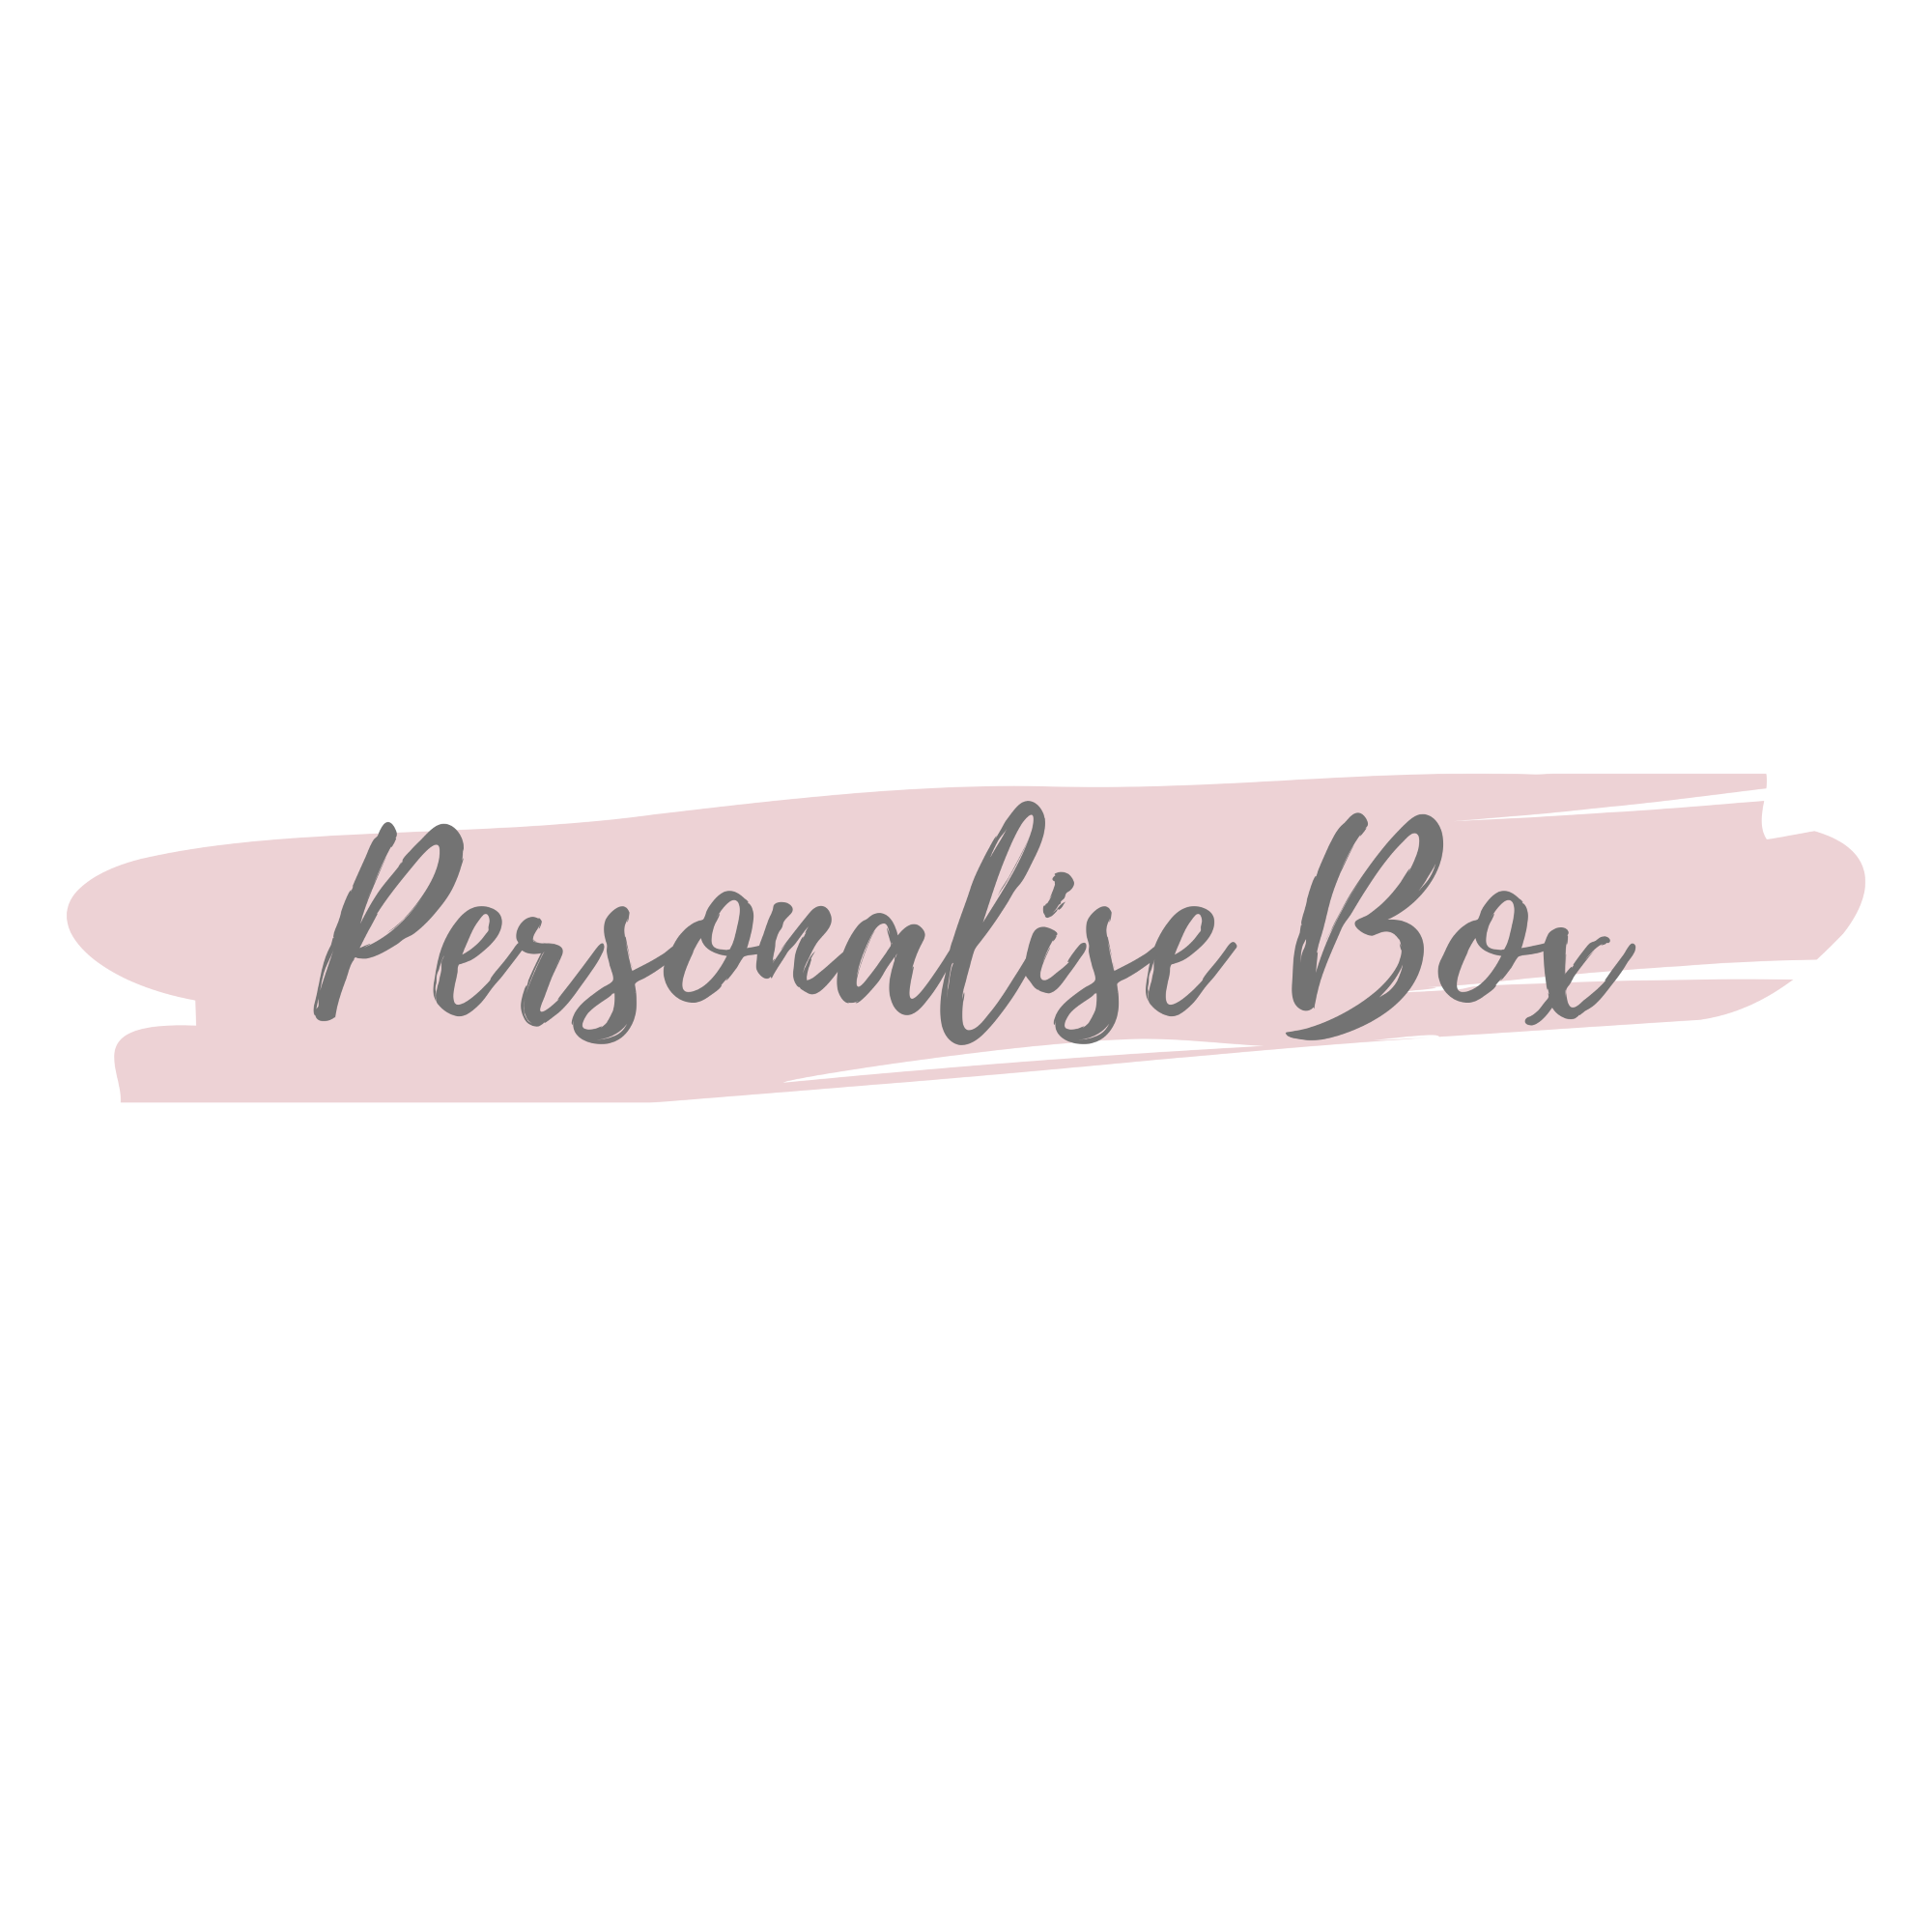 Personalise Box